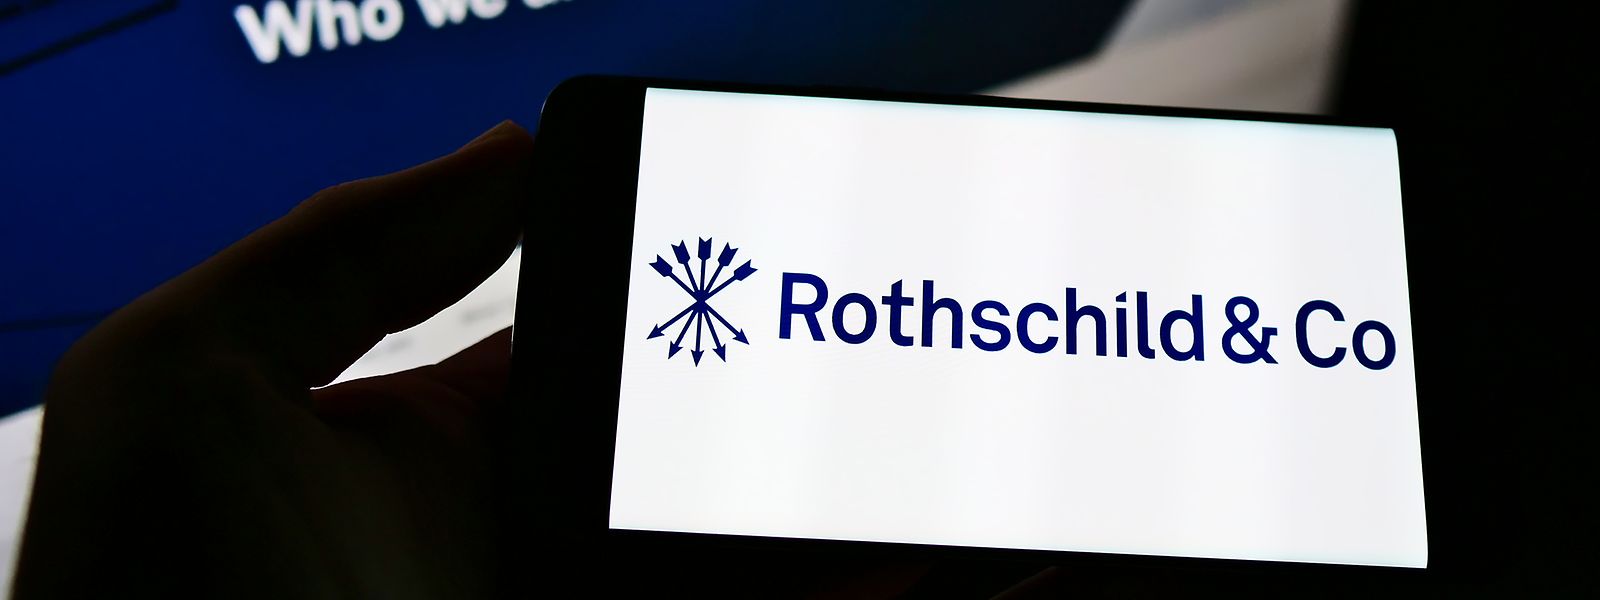 Die Rothschild-Bank soll bald privat geführt werden.